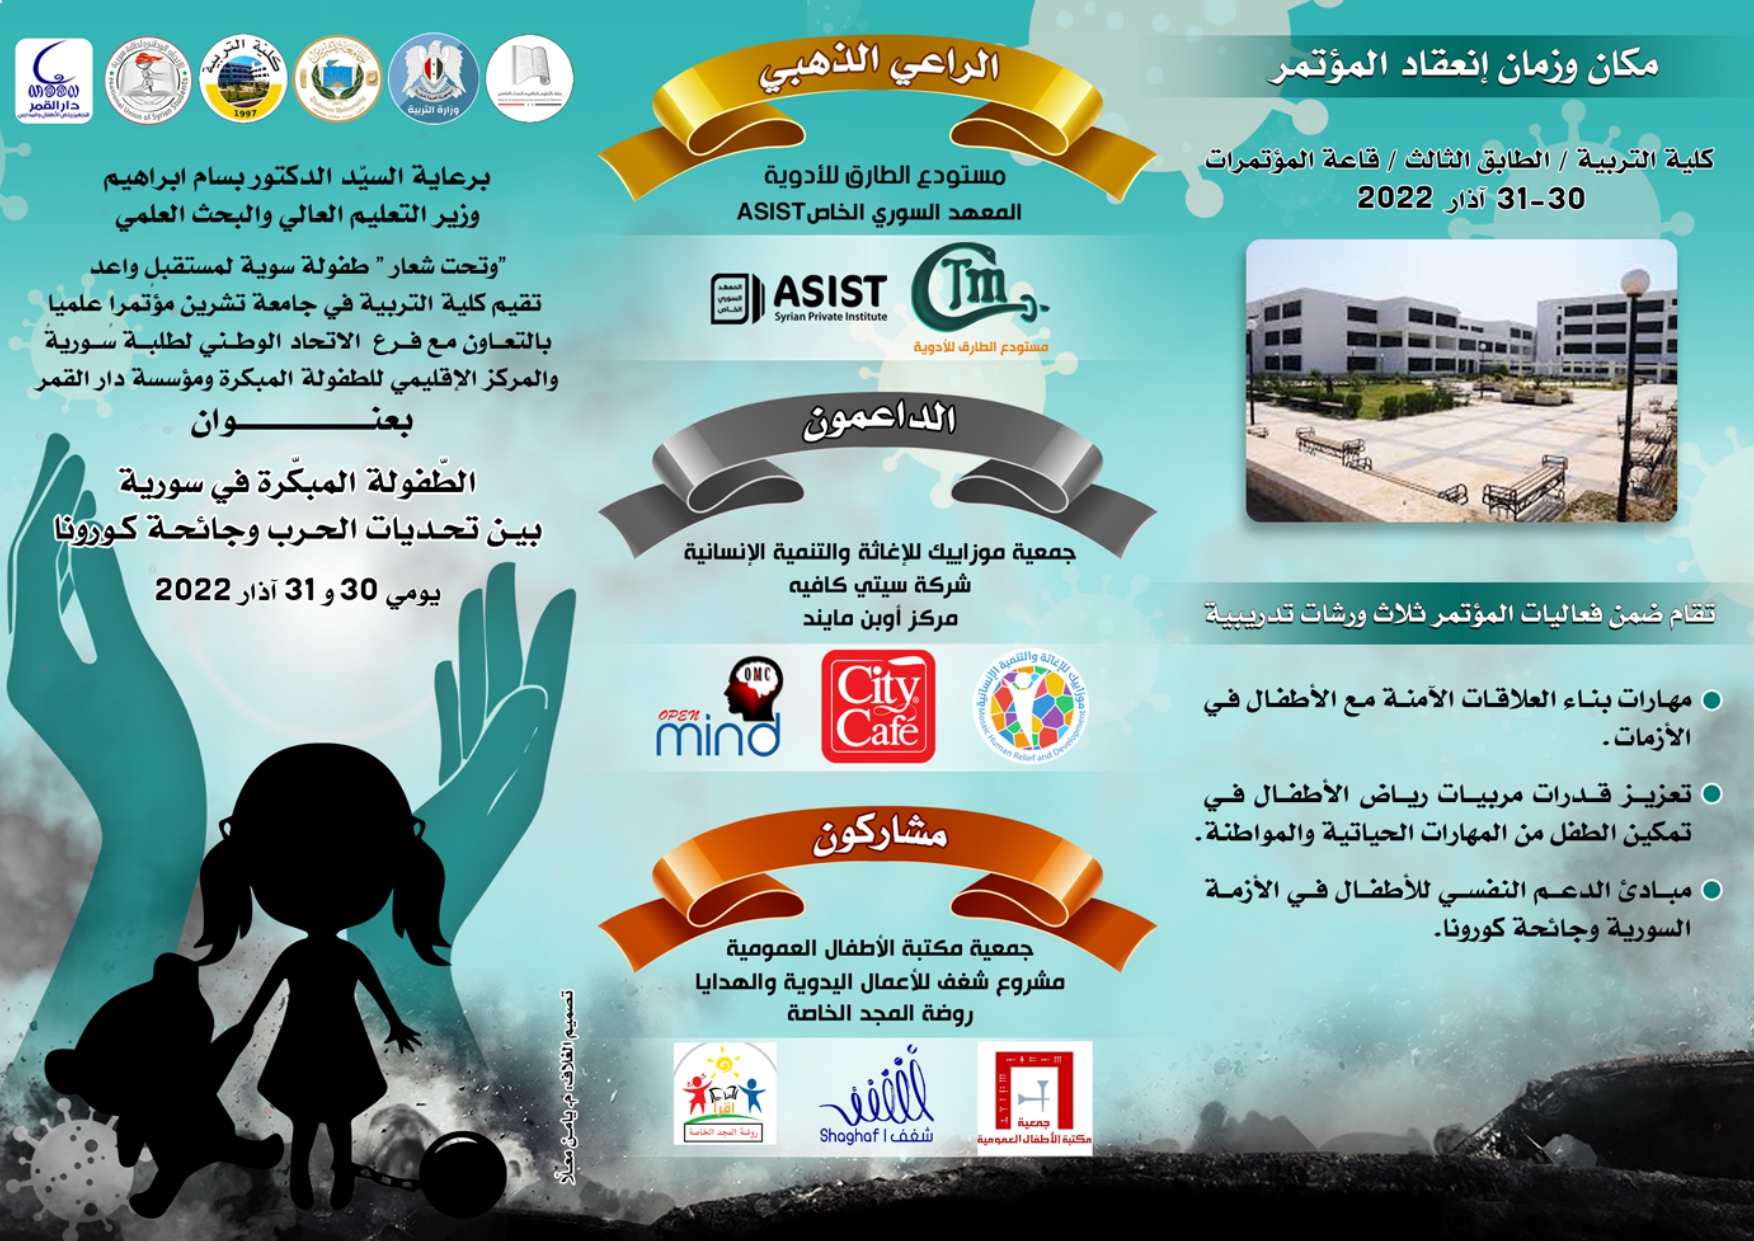 سير فعاليات مؤتمر الطفولة المبكرة في سورية (كلية التربية - جامعة تشرين) 